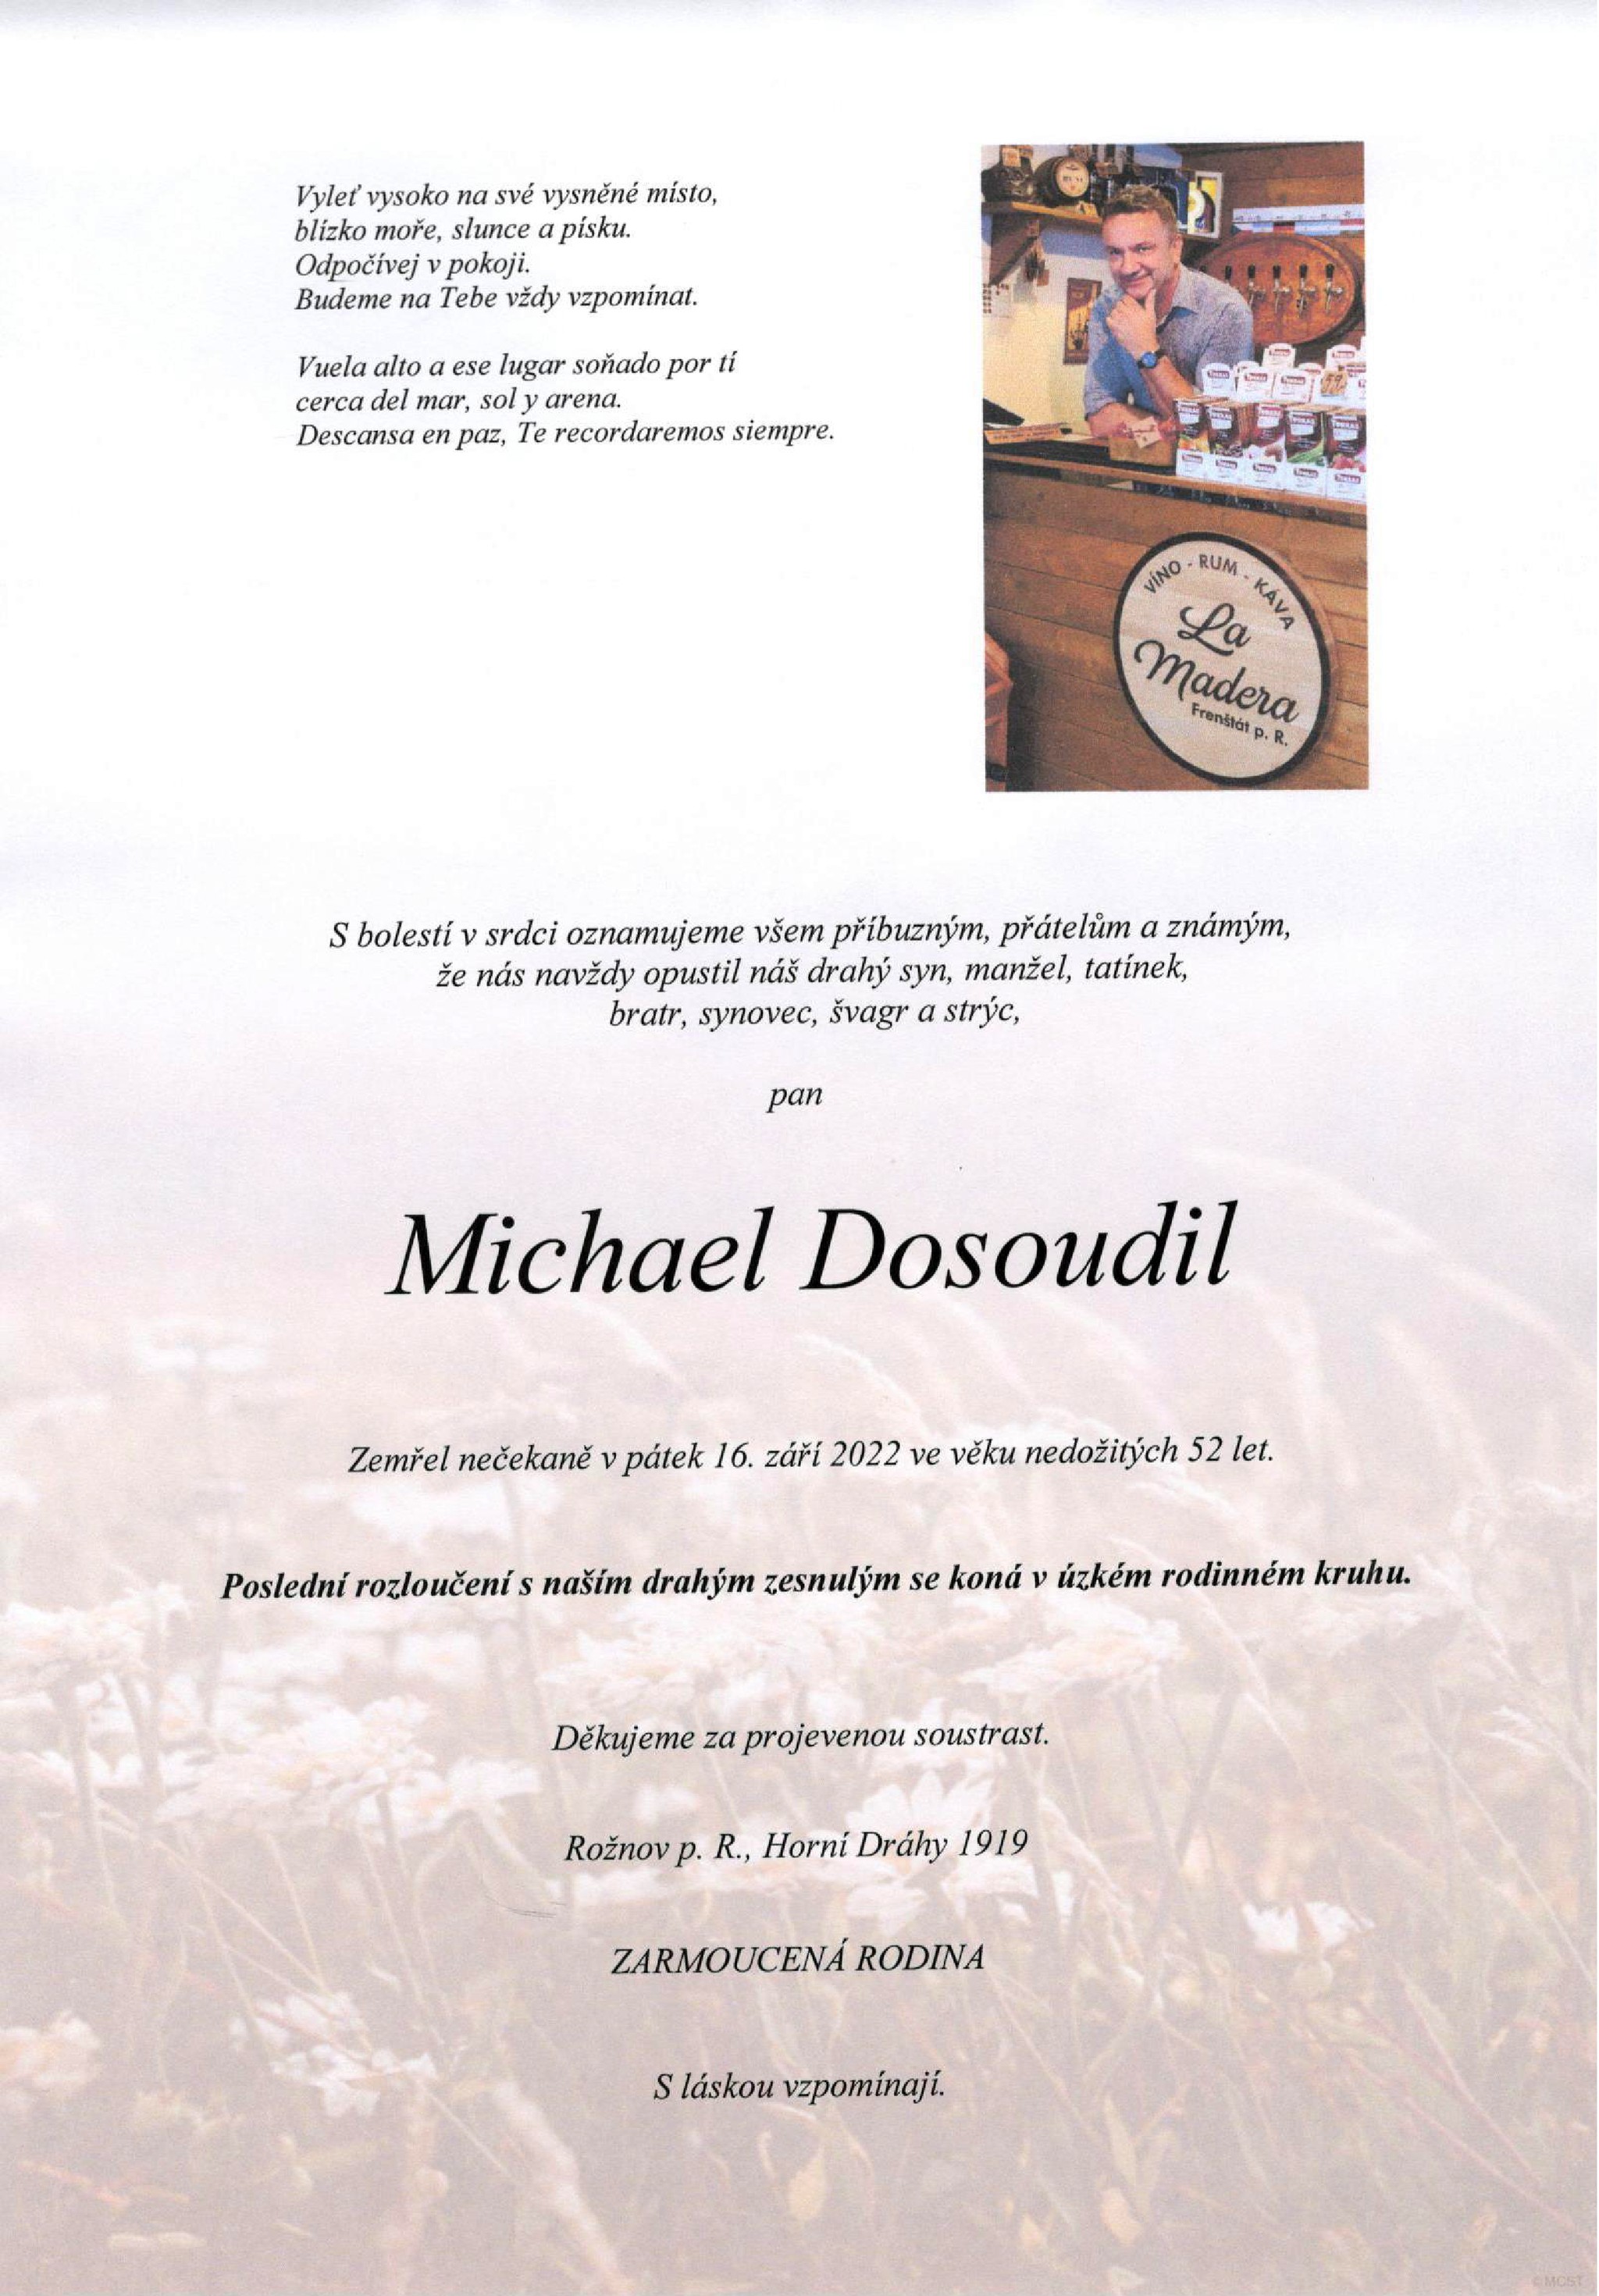 Michael Dosoudil